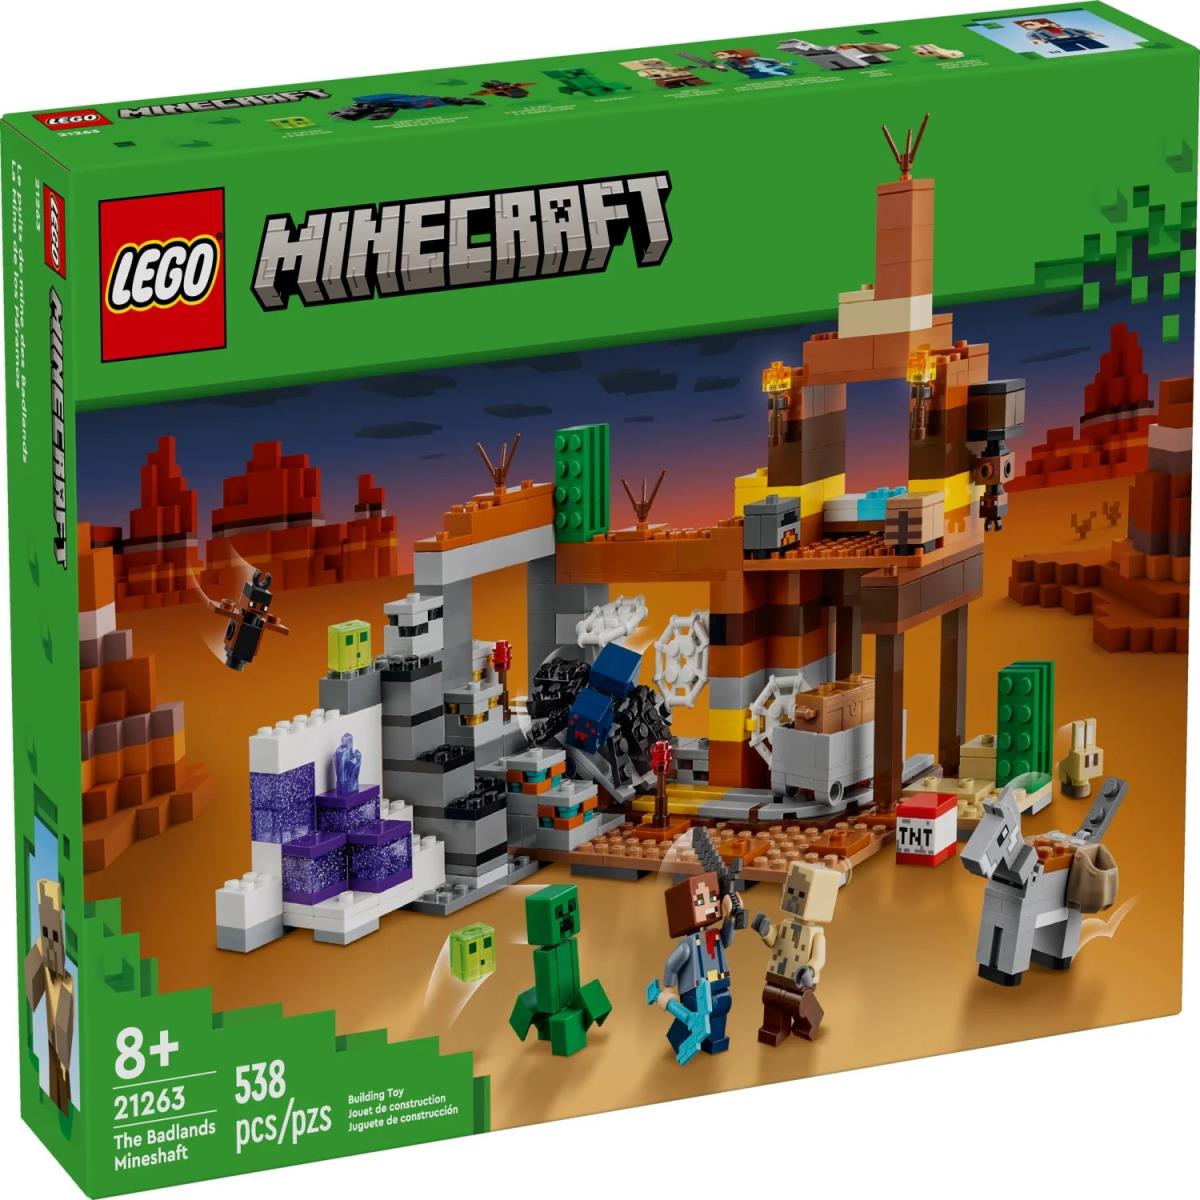 Lego Minecraft The Badlands Mineshaft 21263 Building Toy Mining Exploration Set